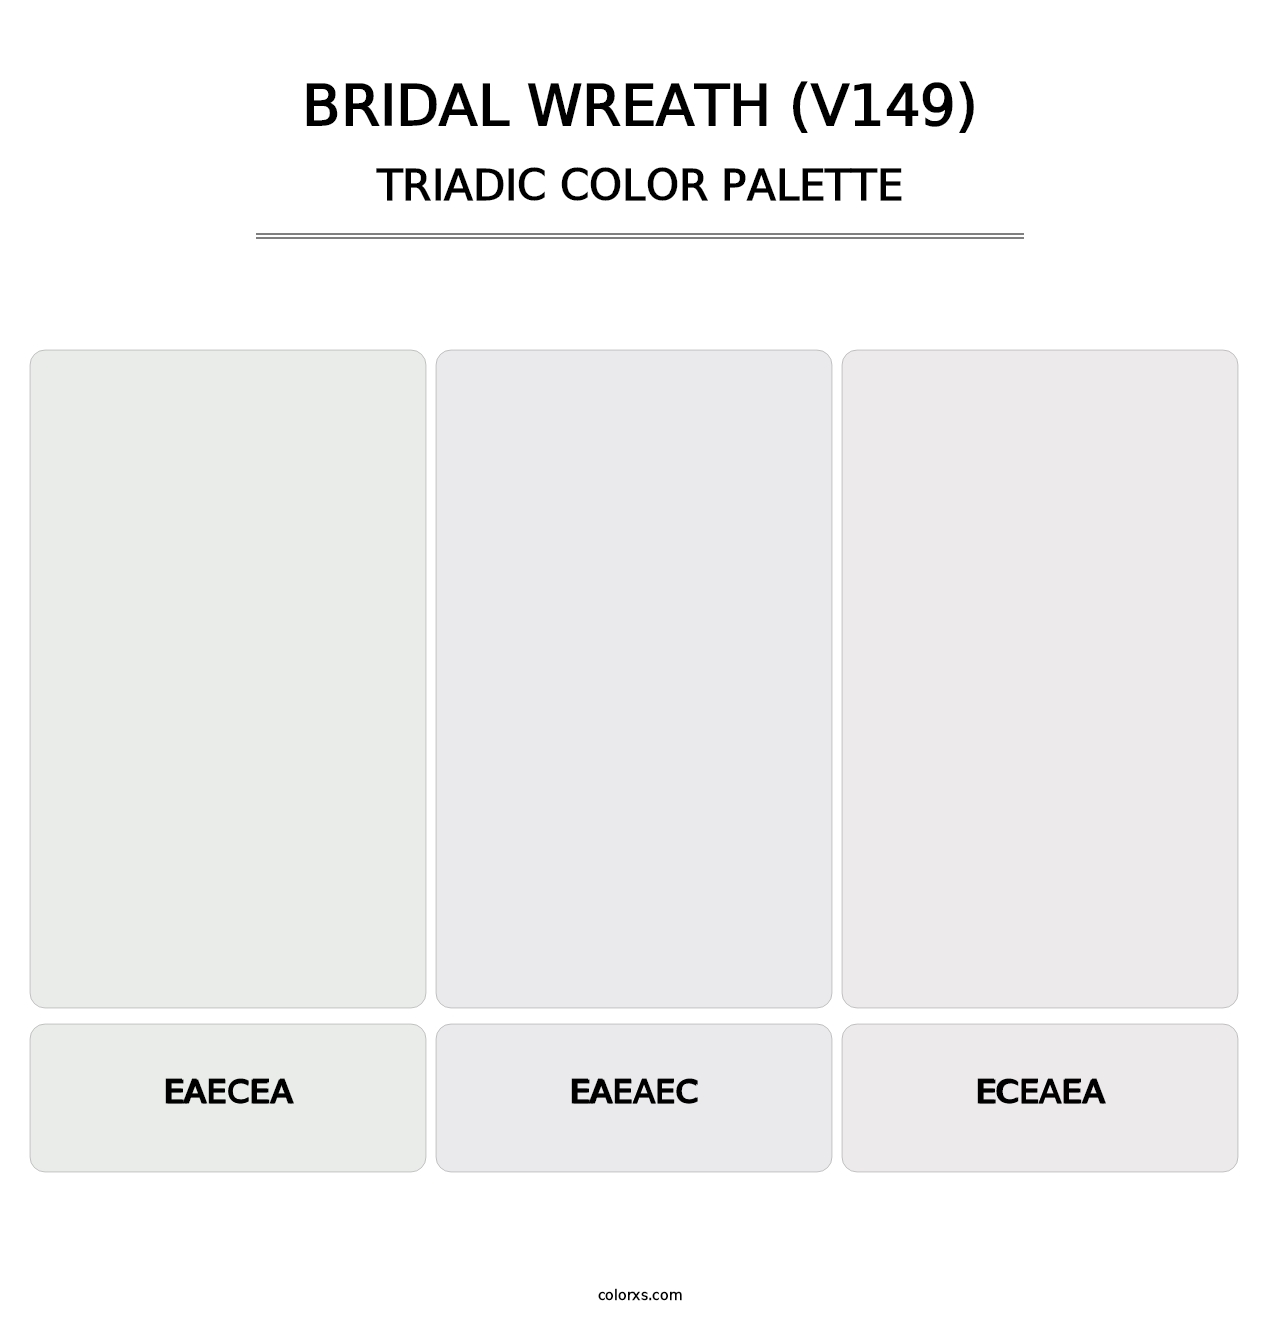 Bridal Wreath (V149) - Triadic Color Palette